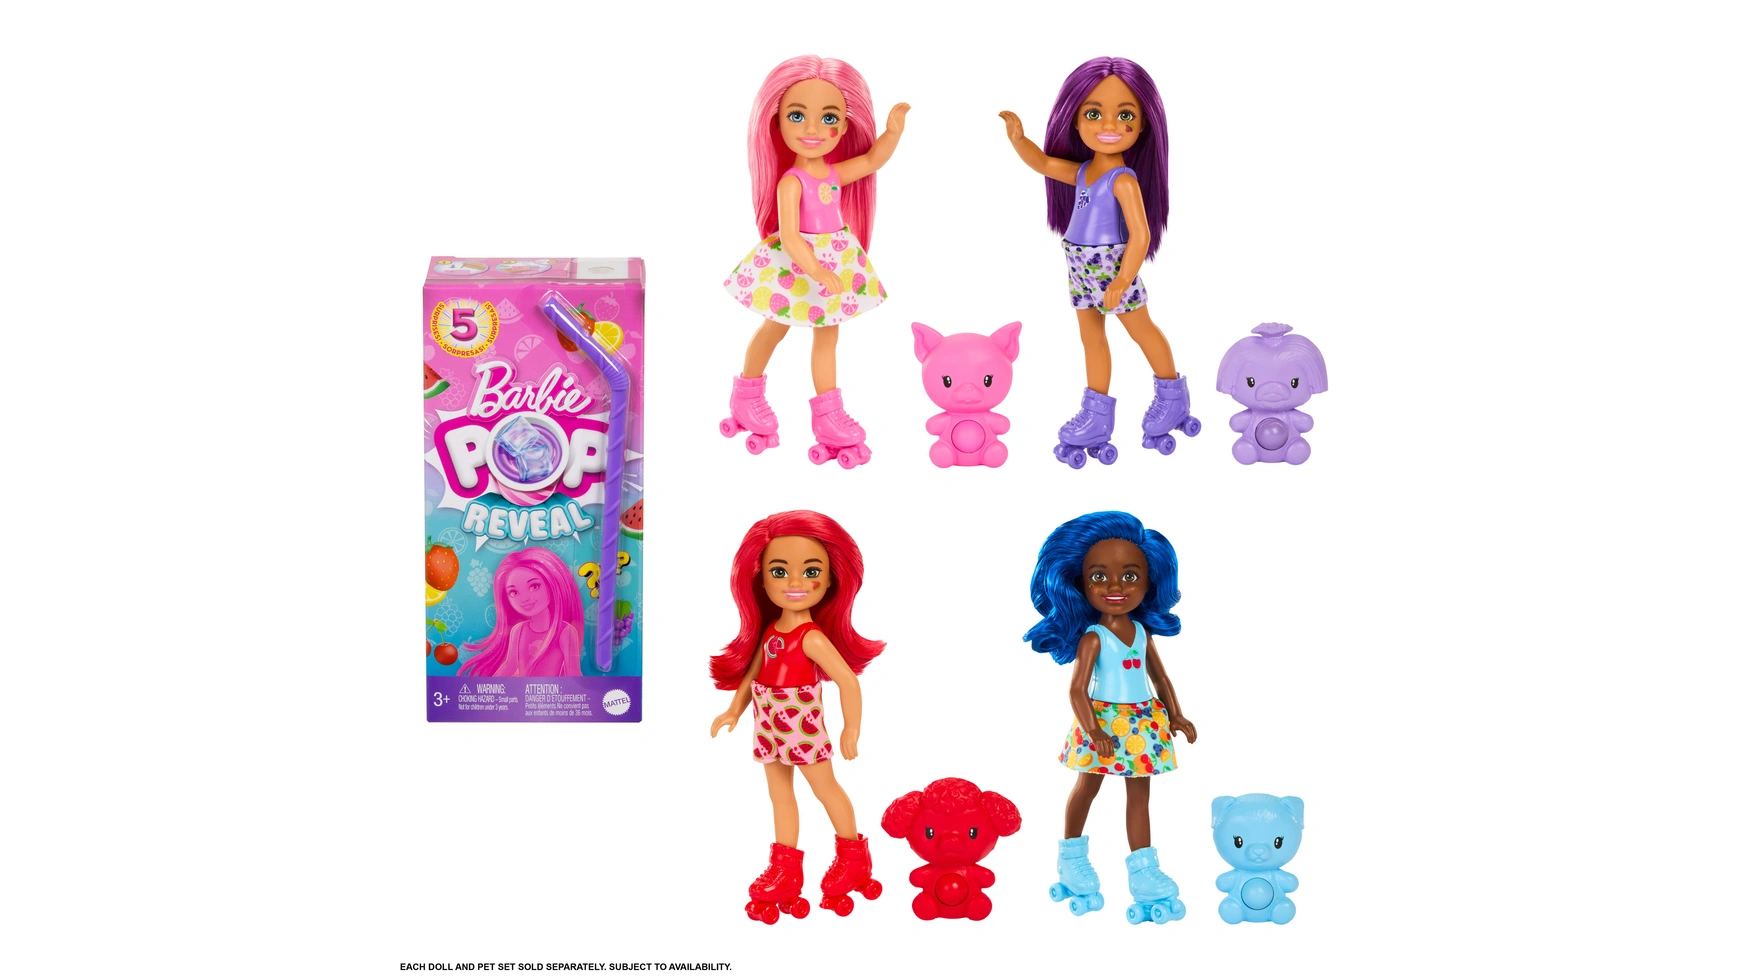 Barbie Поп! Reveal Chelsea Fruit Series, 1 штука, в ассортименте barbie colour reveal festival lights set